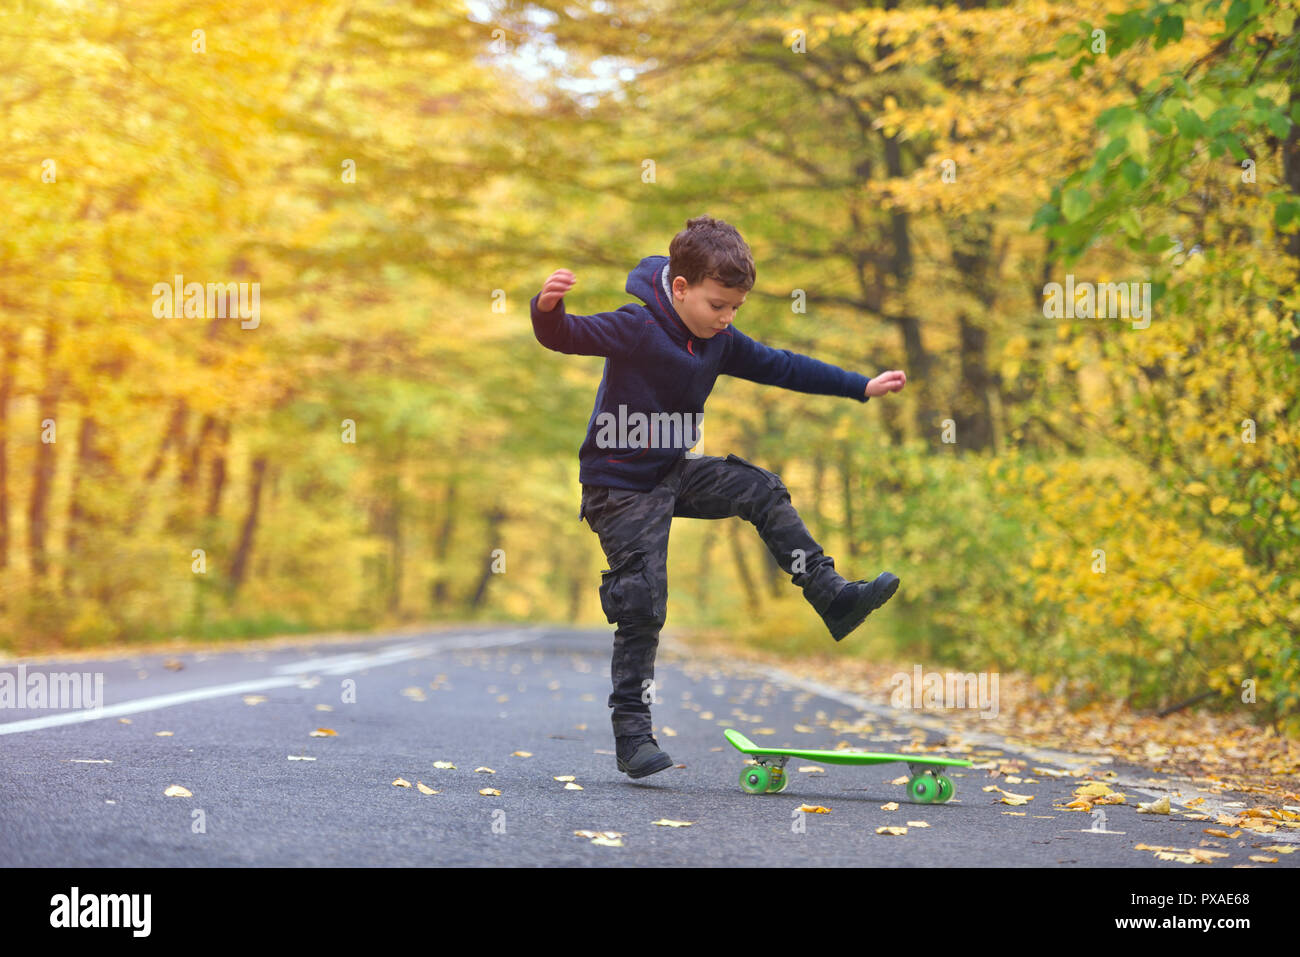 Chico skater haciendo skateboard trucos en otoño de medio ambiente Foto de stock